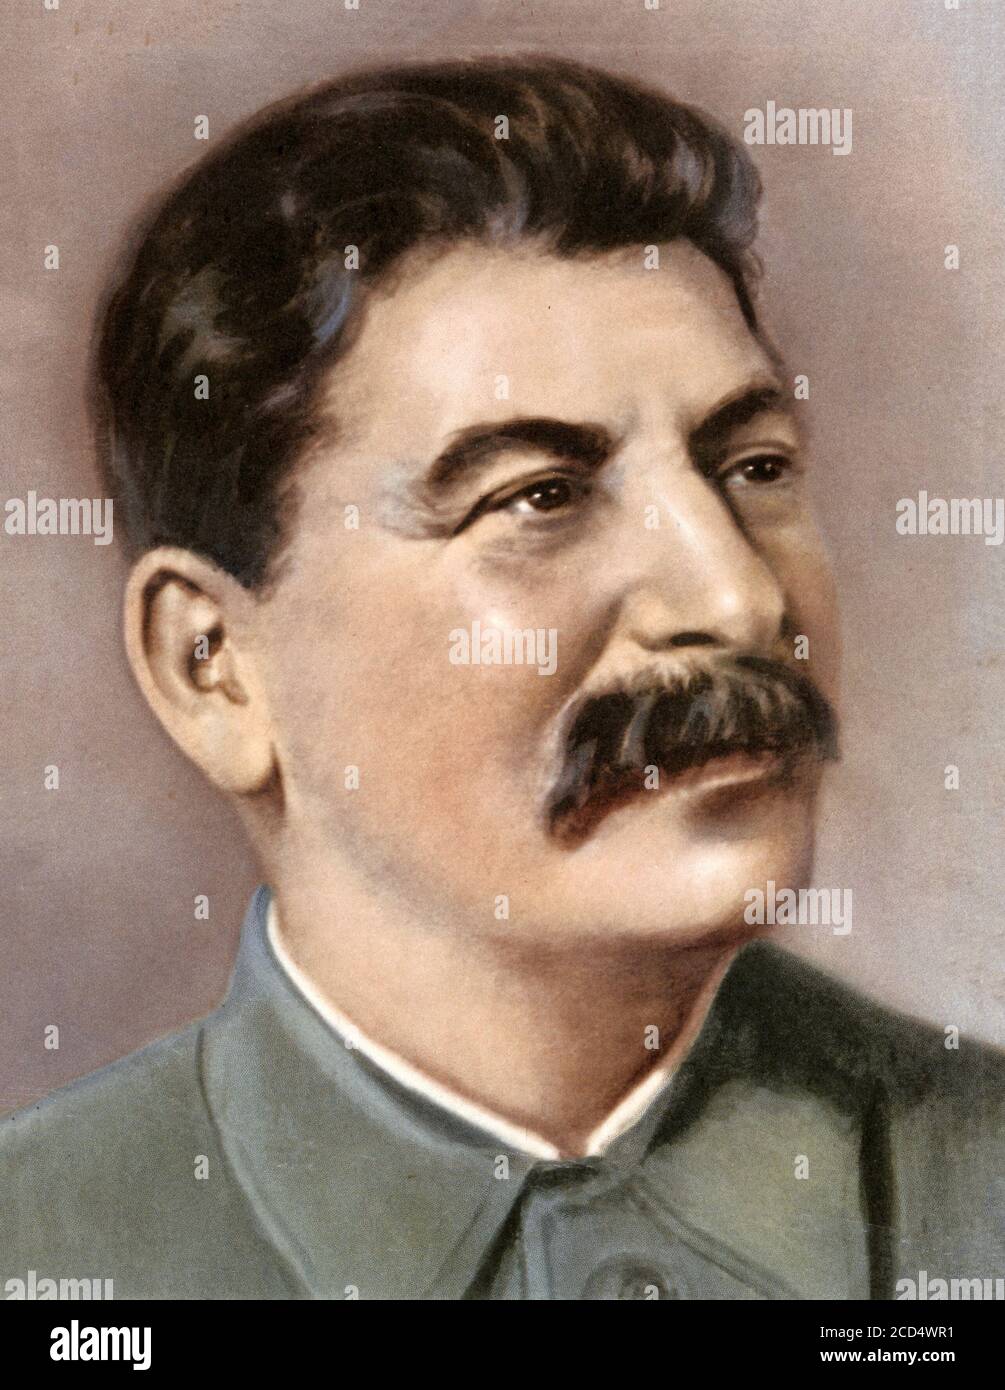 Joseph Staline, premier ministre et secrétaire général du Comité central du Parti communiste de l'Union soviétique. Banque D'Images